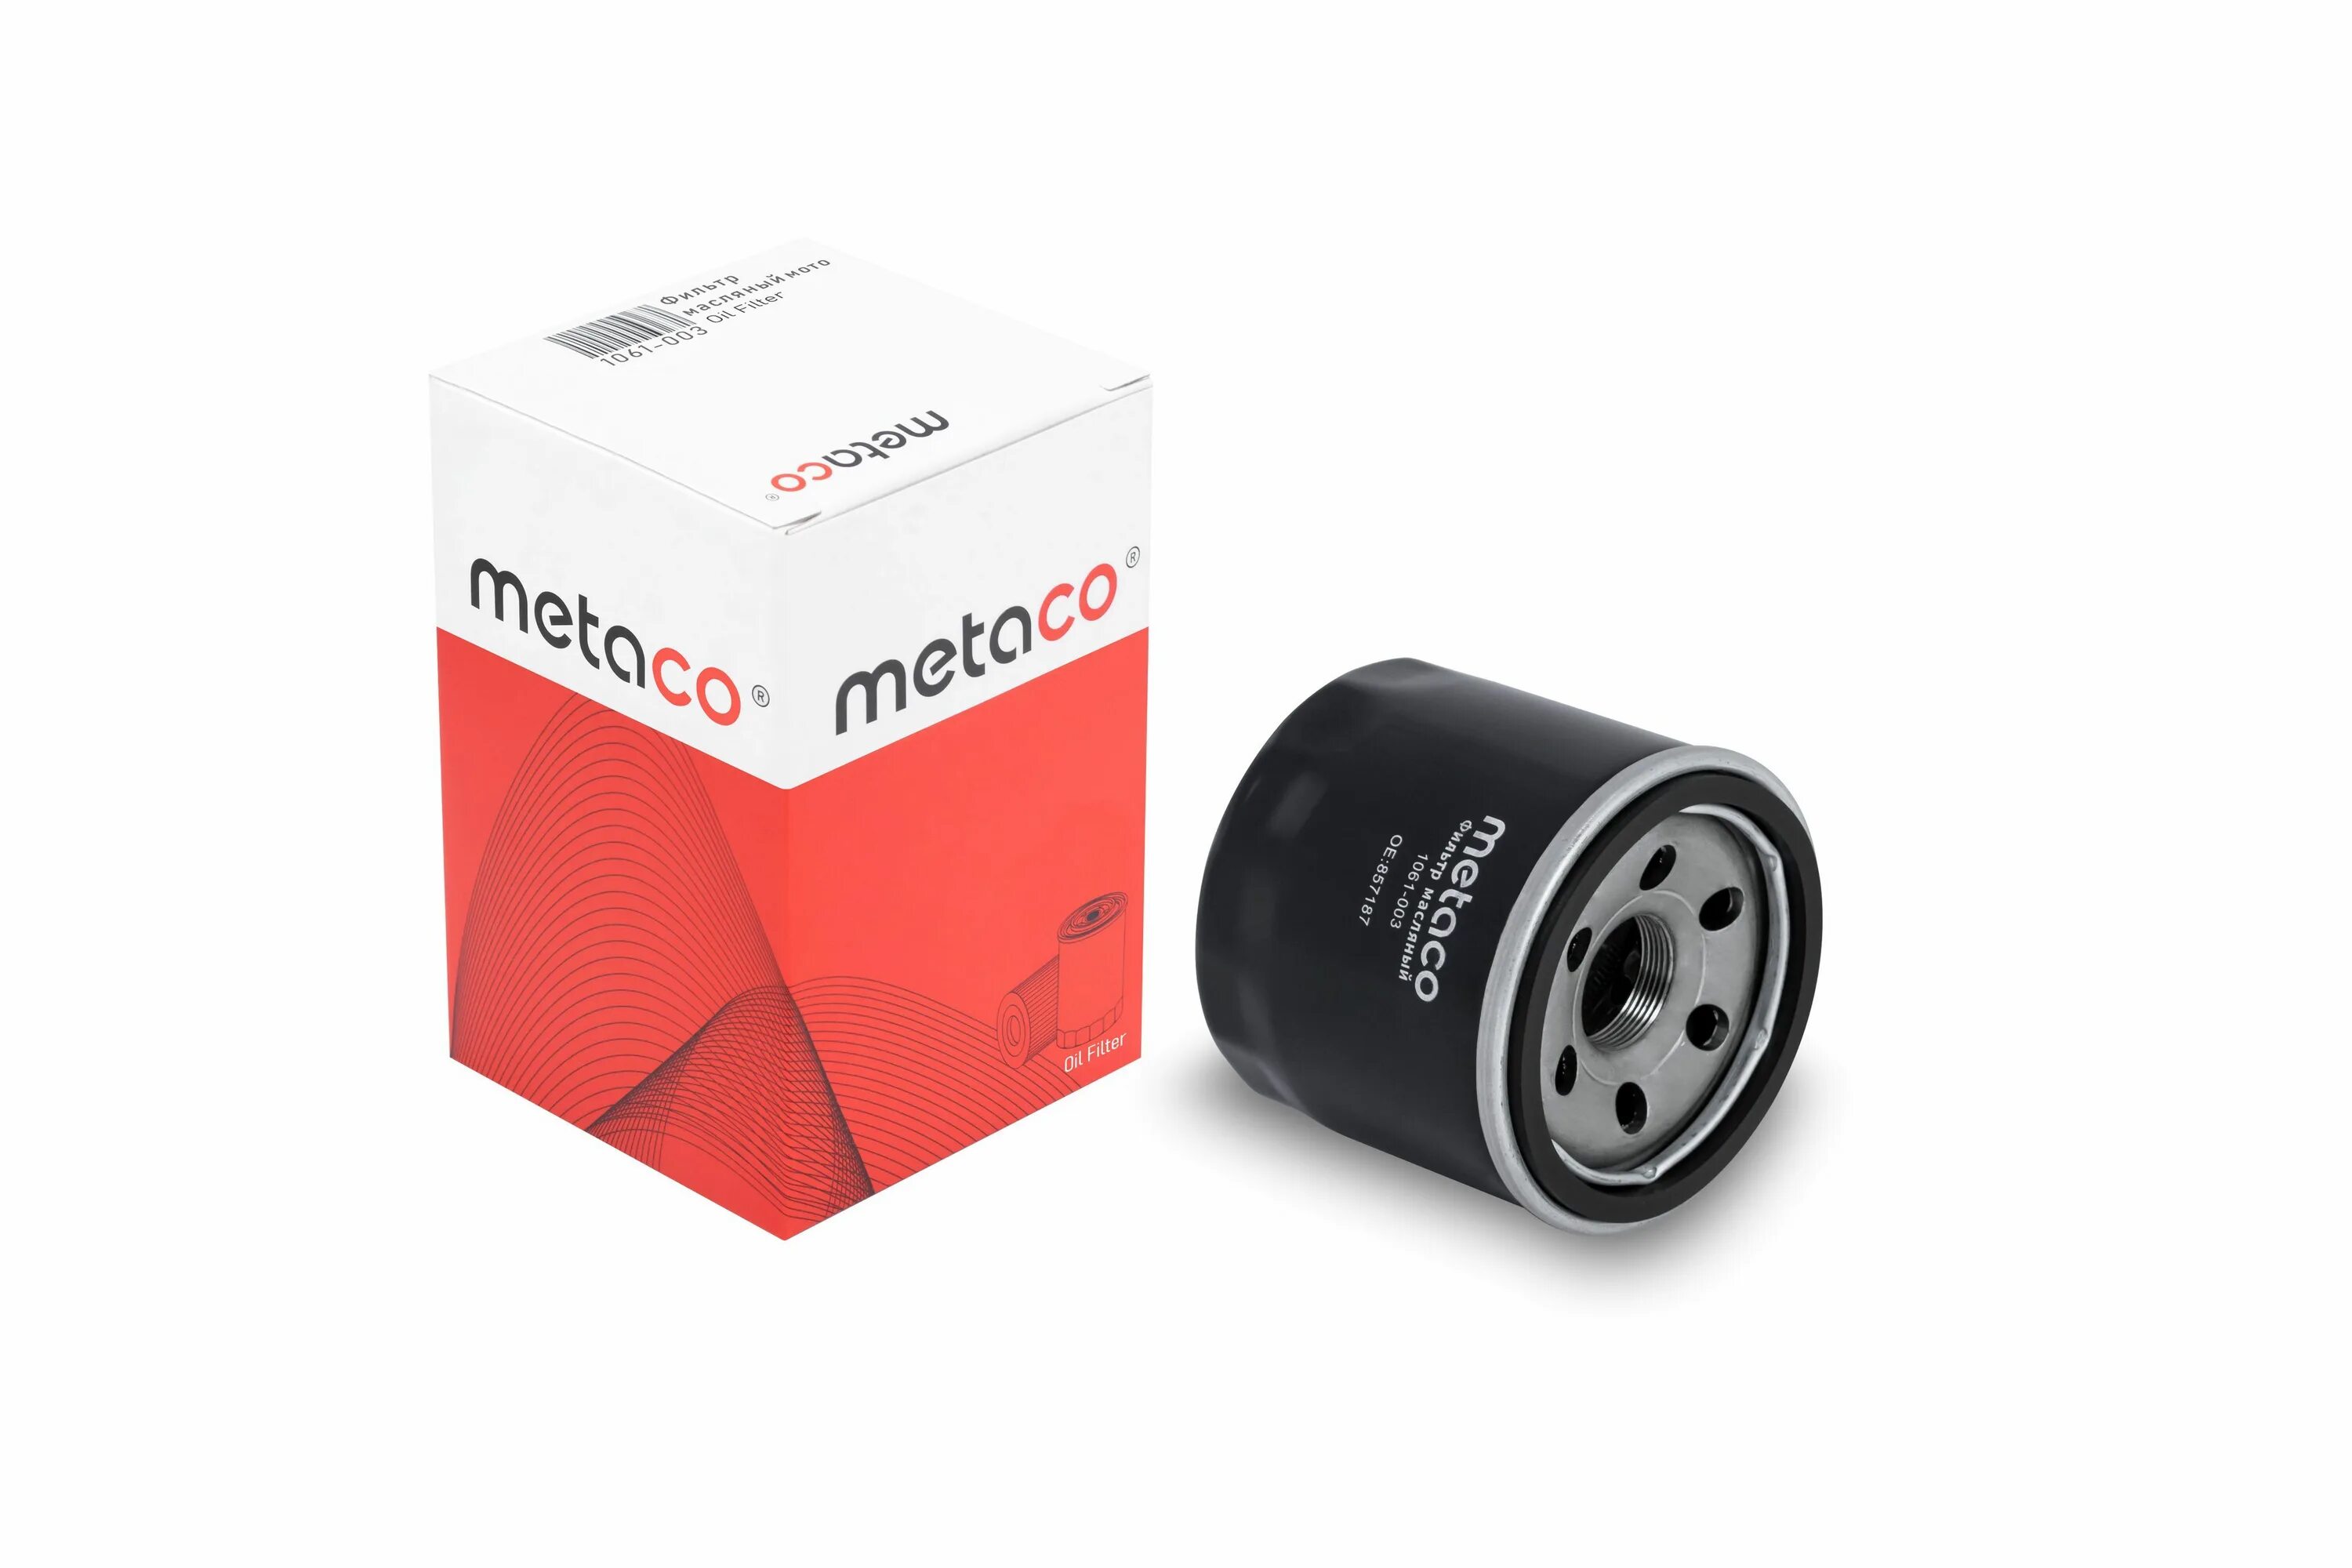 Фильтр воздушный metaco. 1020-028 Metaco фильтр масляный. Md360935 фильтр масляный. 1020-028 Metaco. 1020-222 Metaco фильтр масляный.